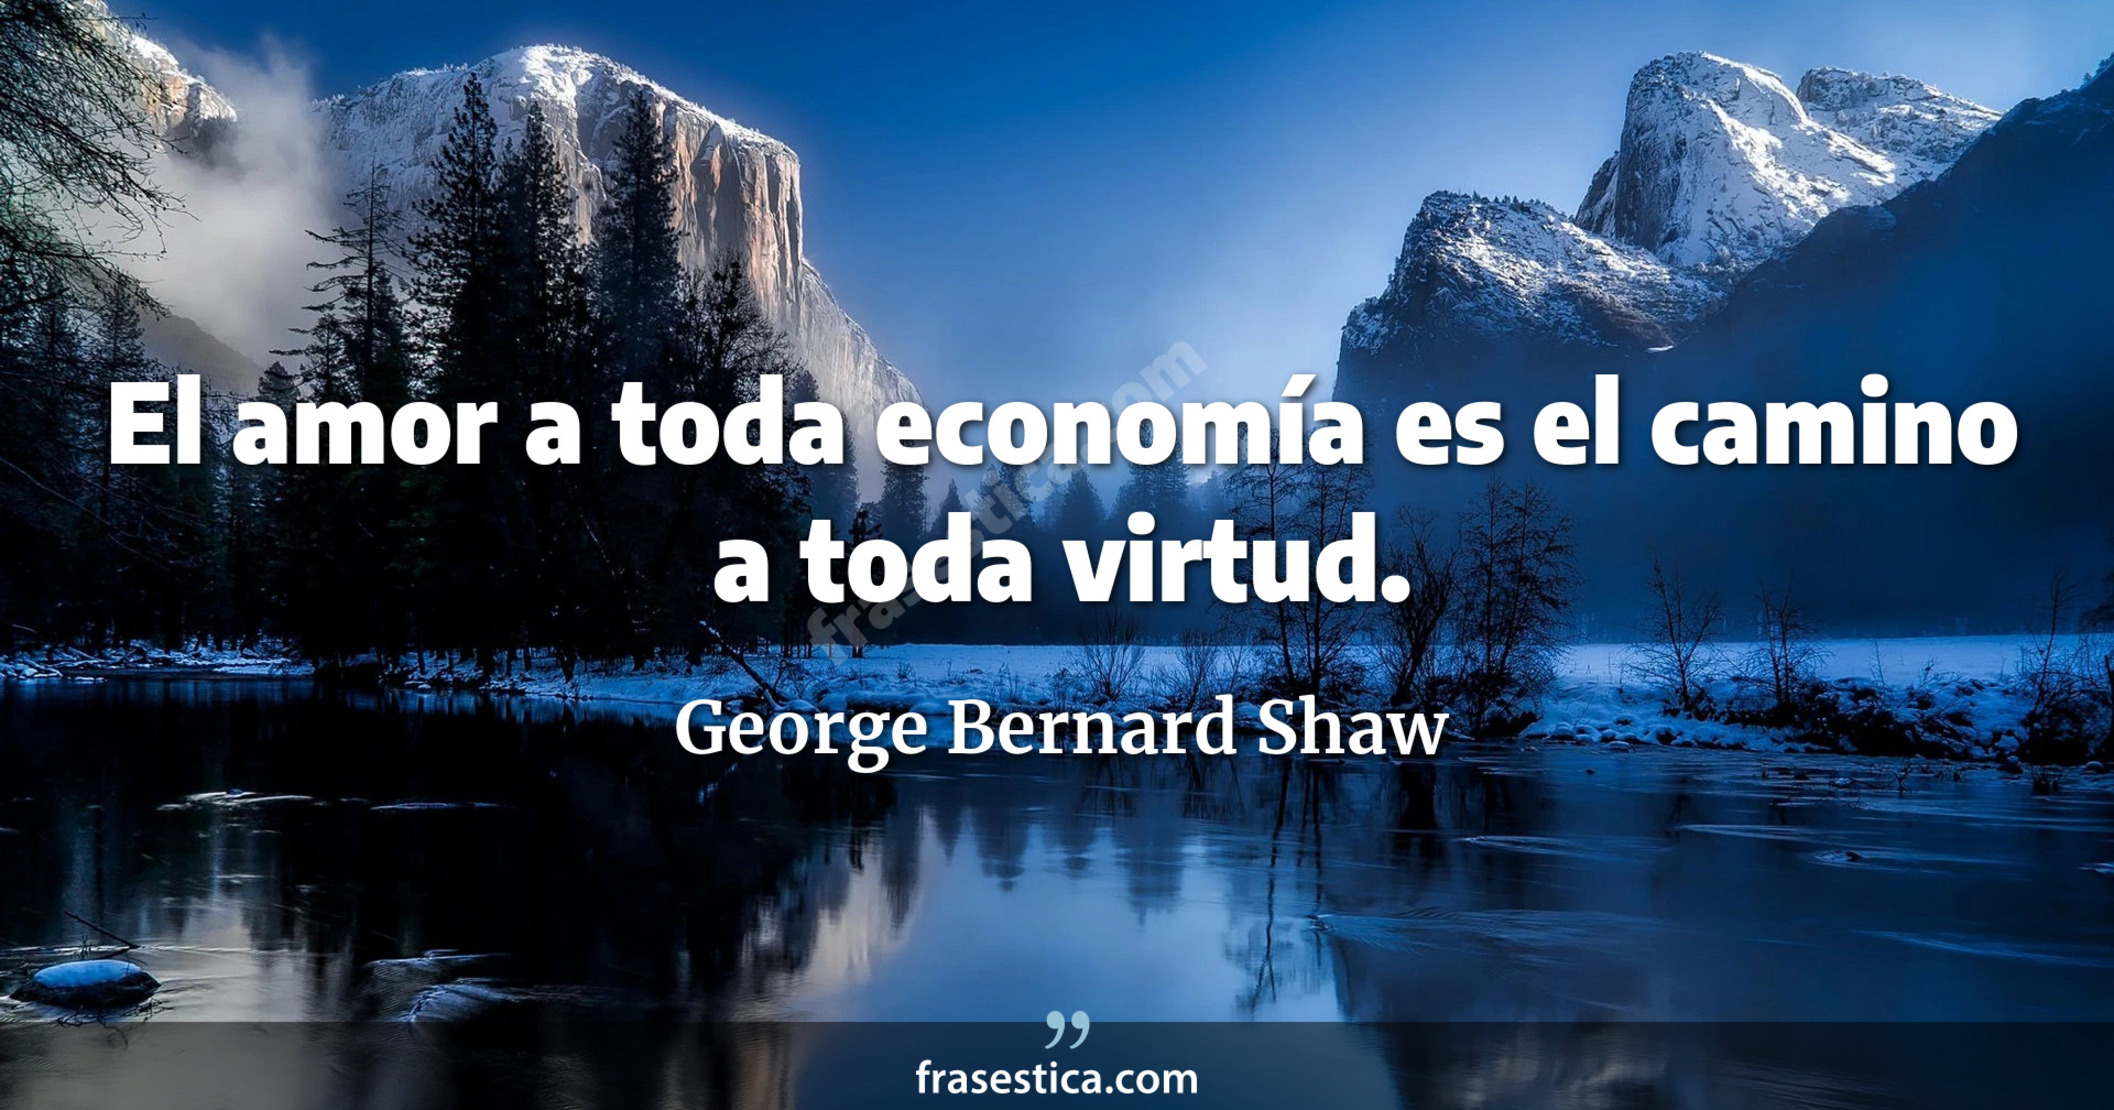 El amor a toda economía es el camino a toda virtud. - George Bernard Shaw